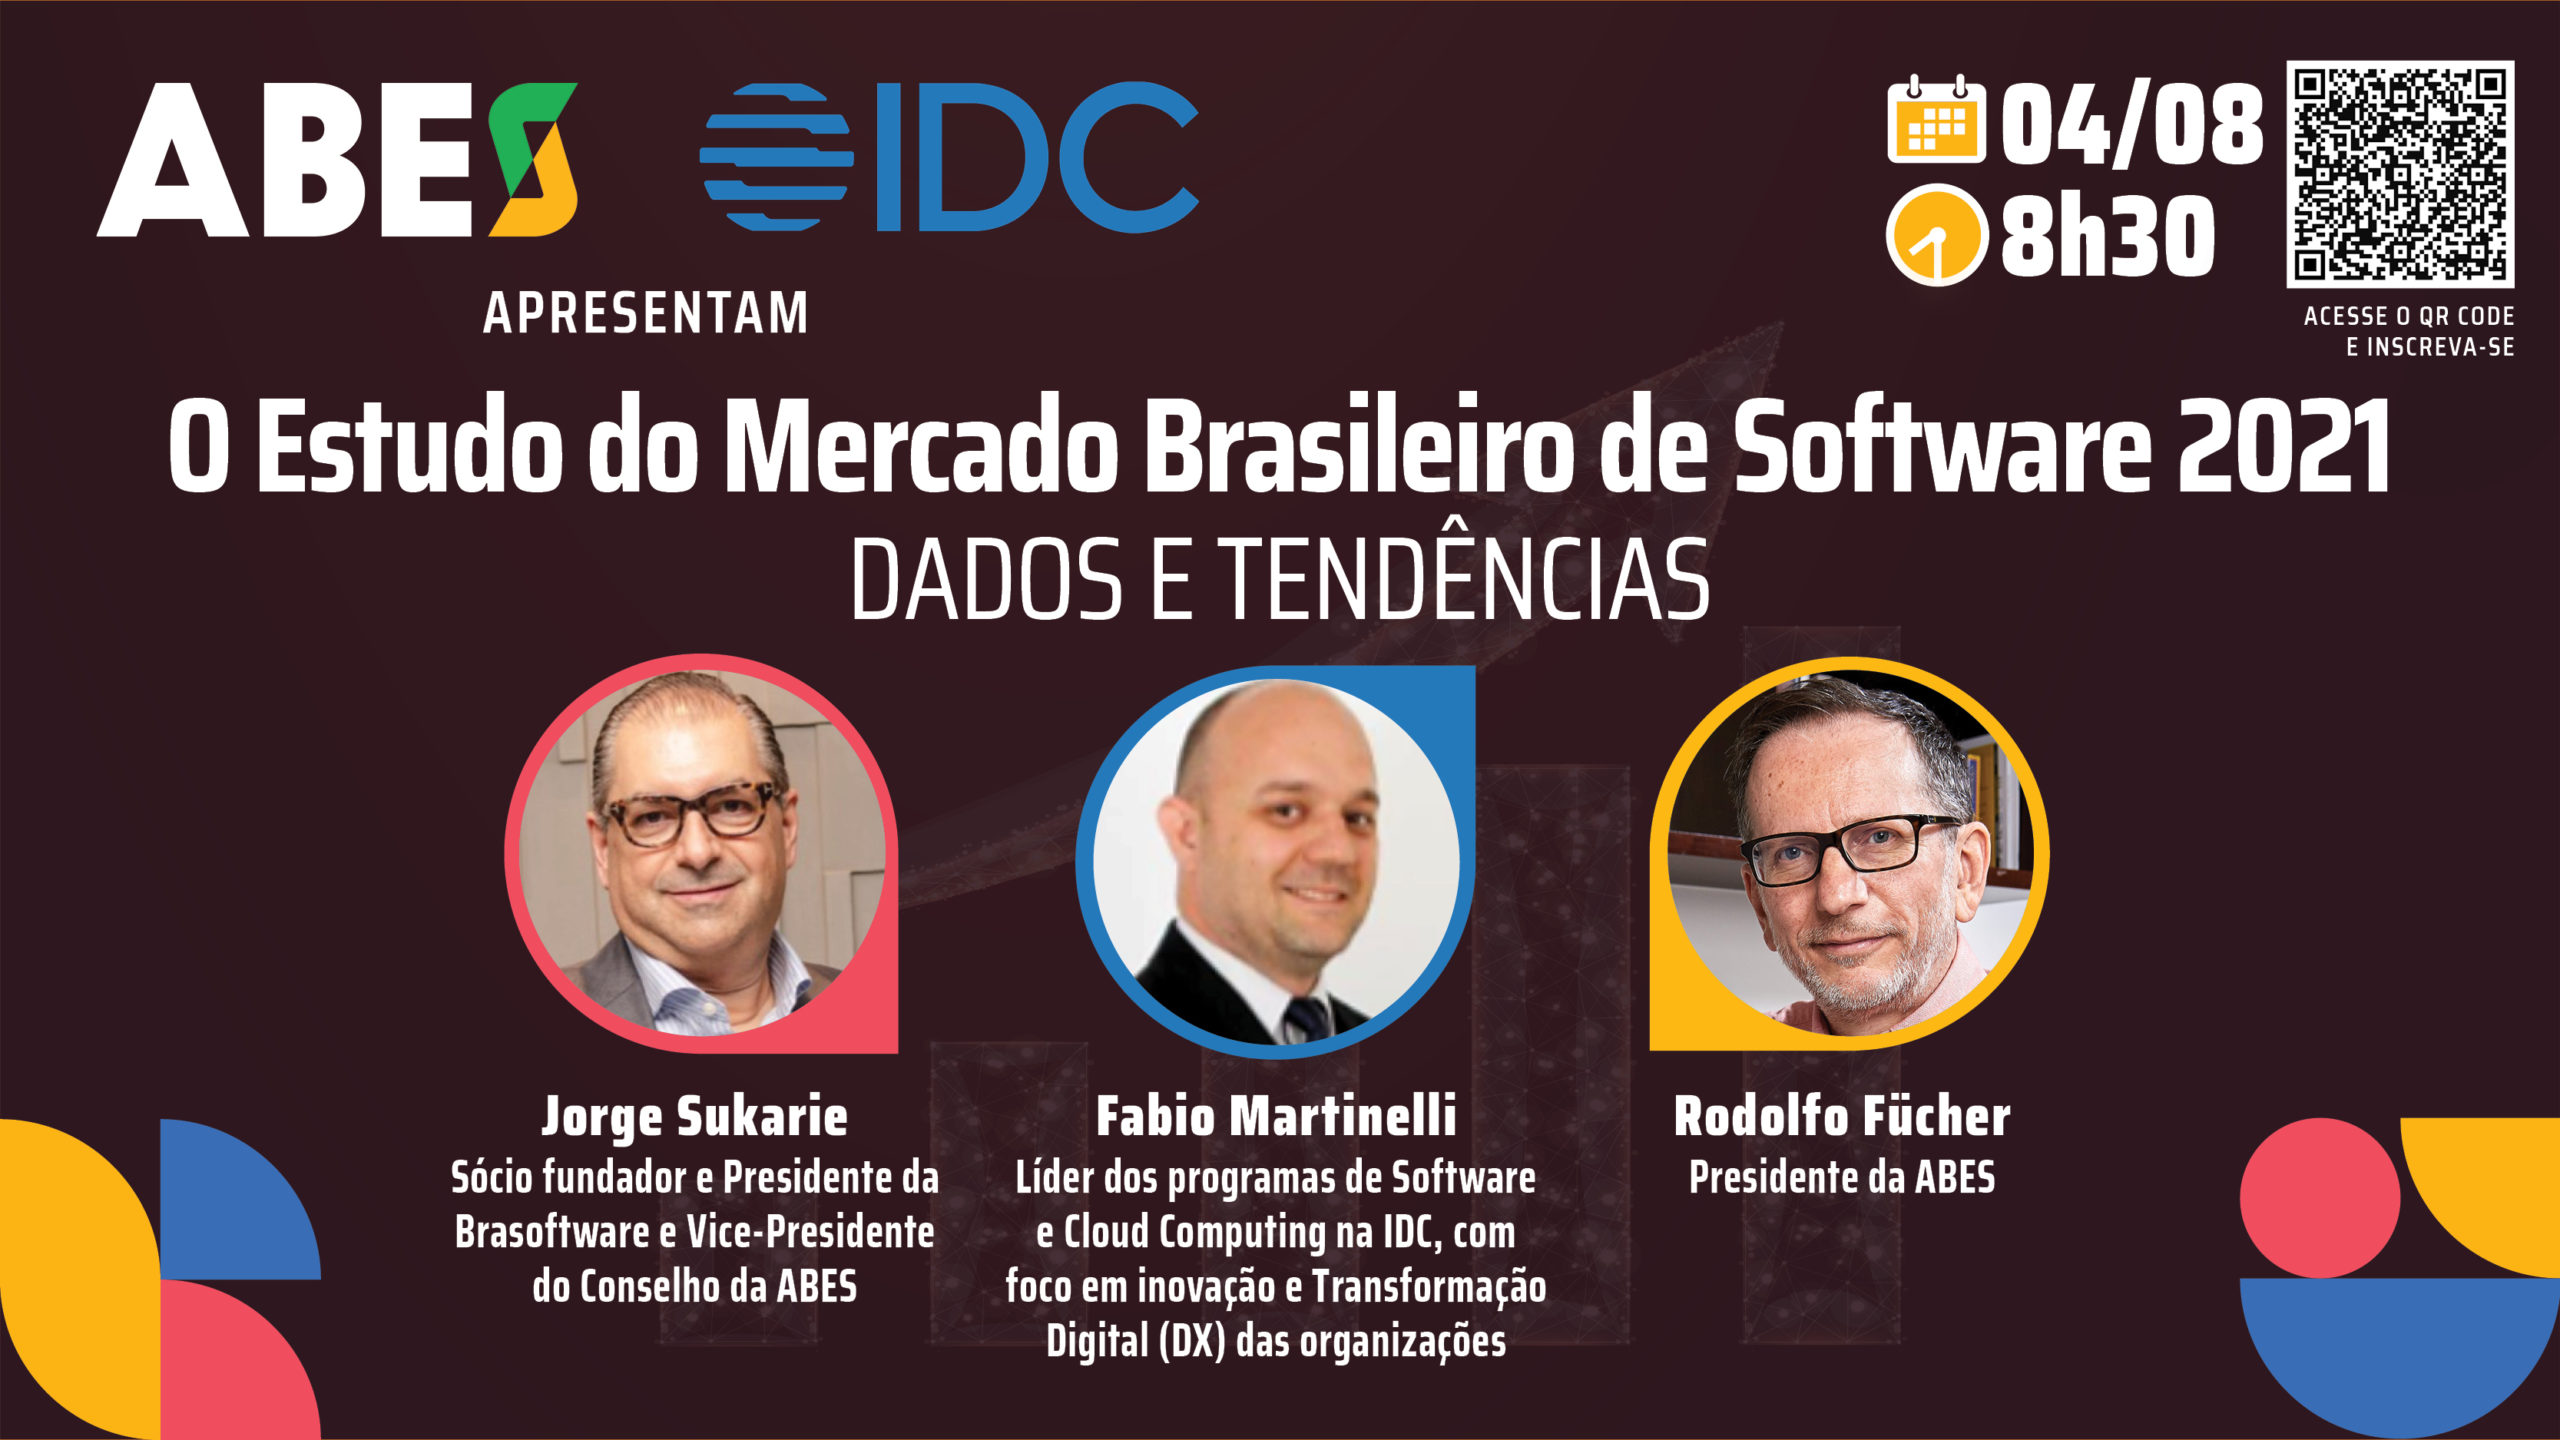 ABES convida para a apresentação do Estudo do Mercado Brasileiro de Software – Panorama e Tendências 2021